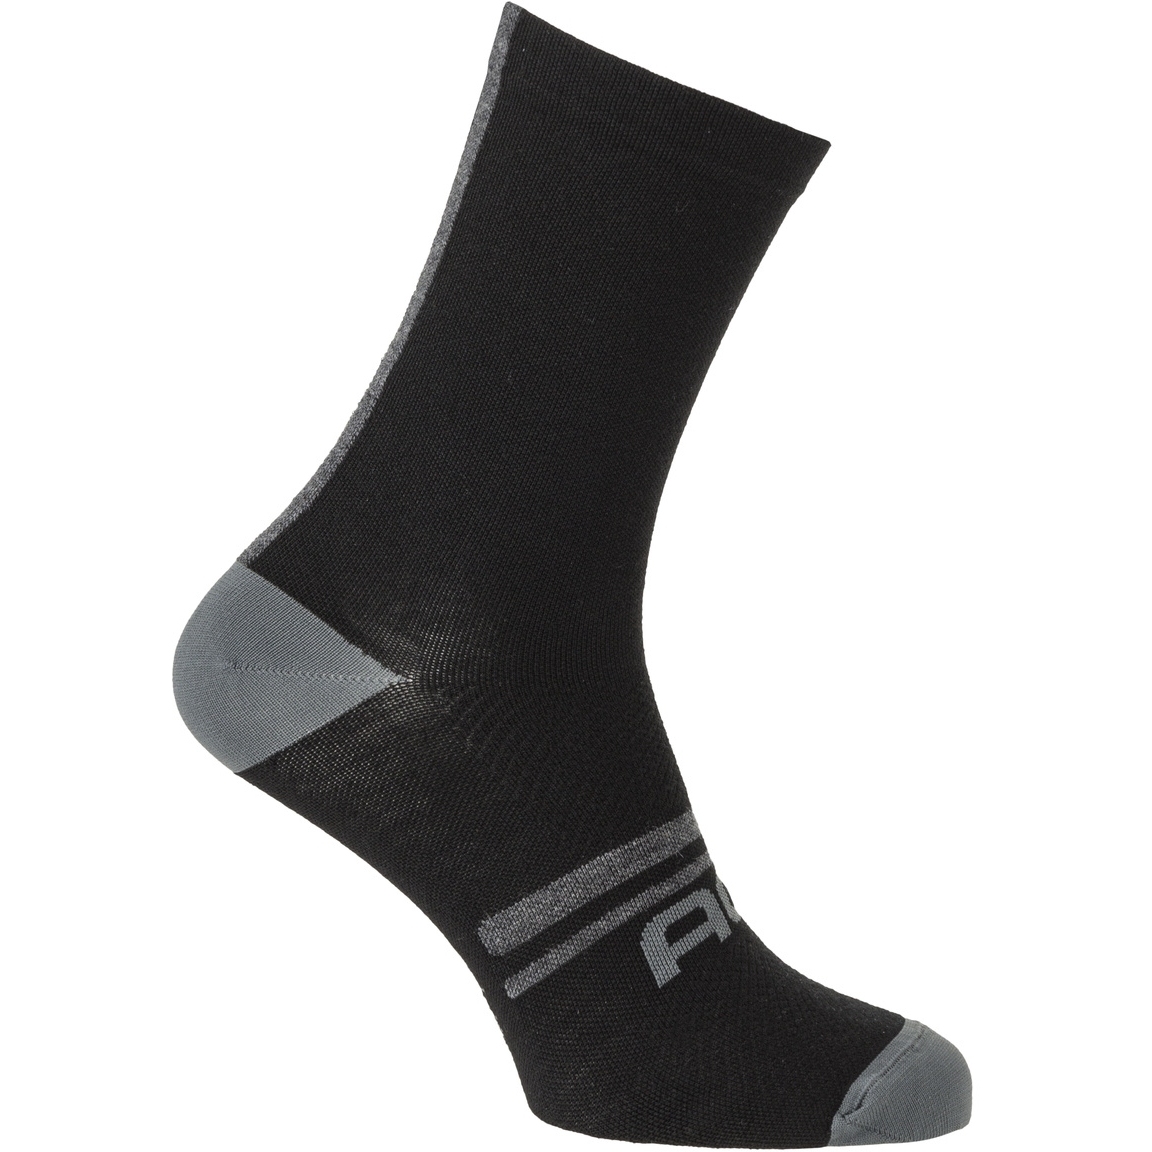 Produktbild von AGU Essential Winter Merino Socken - black